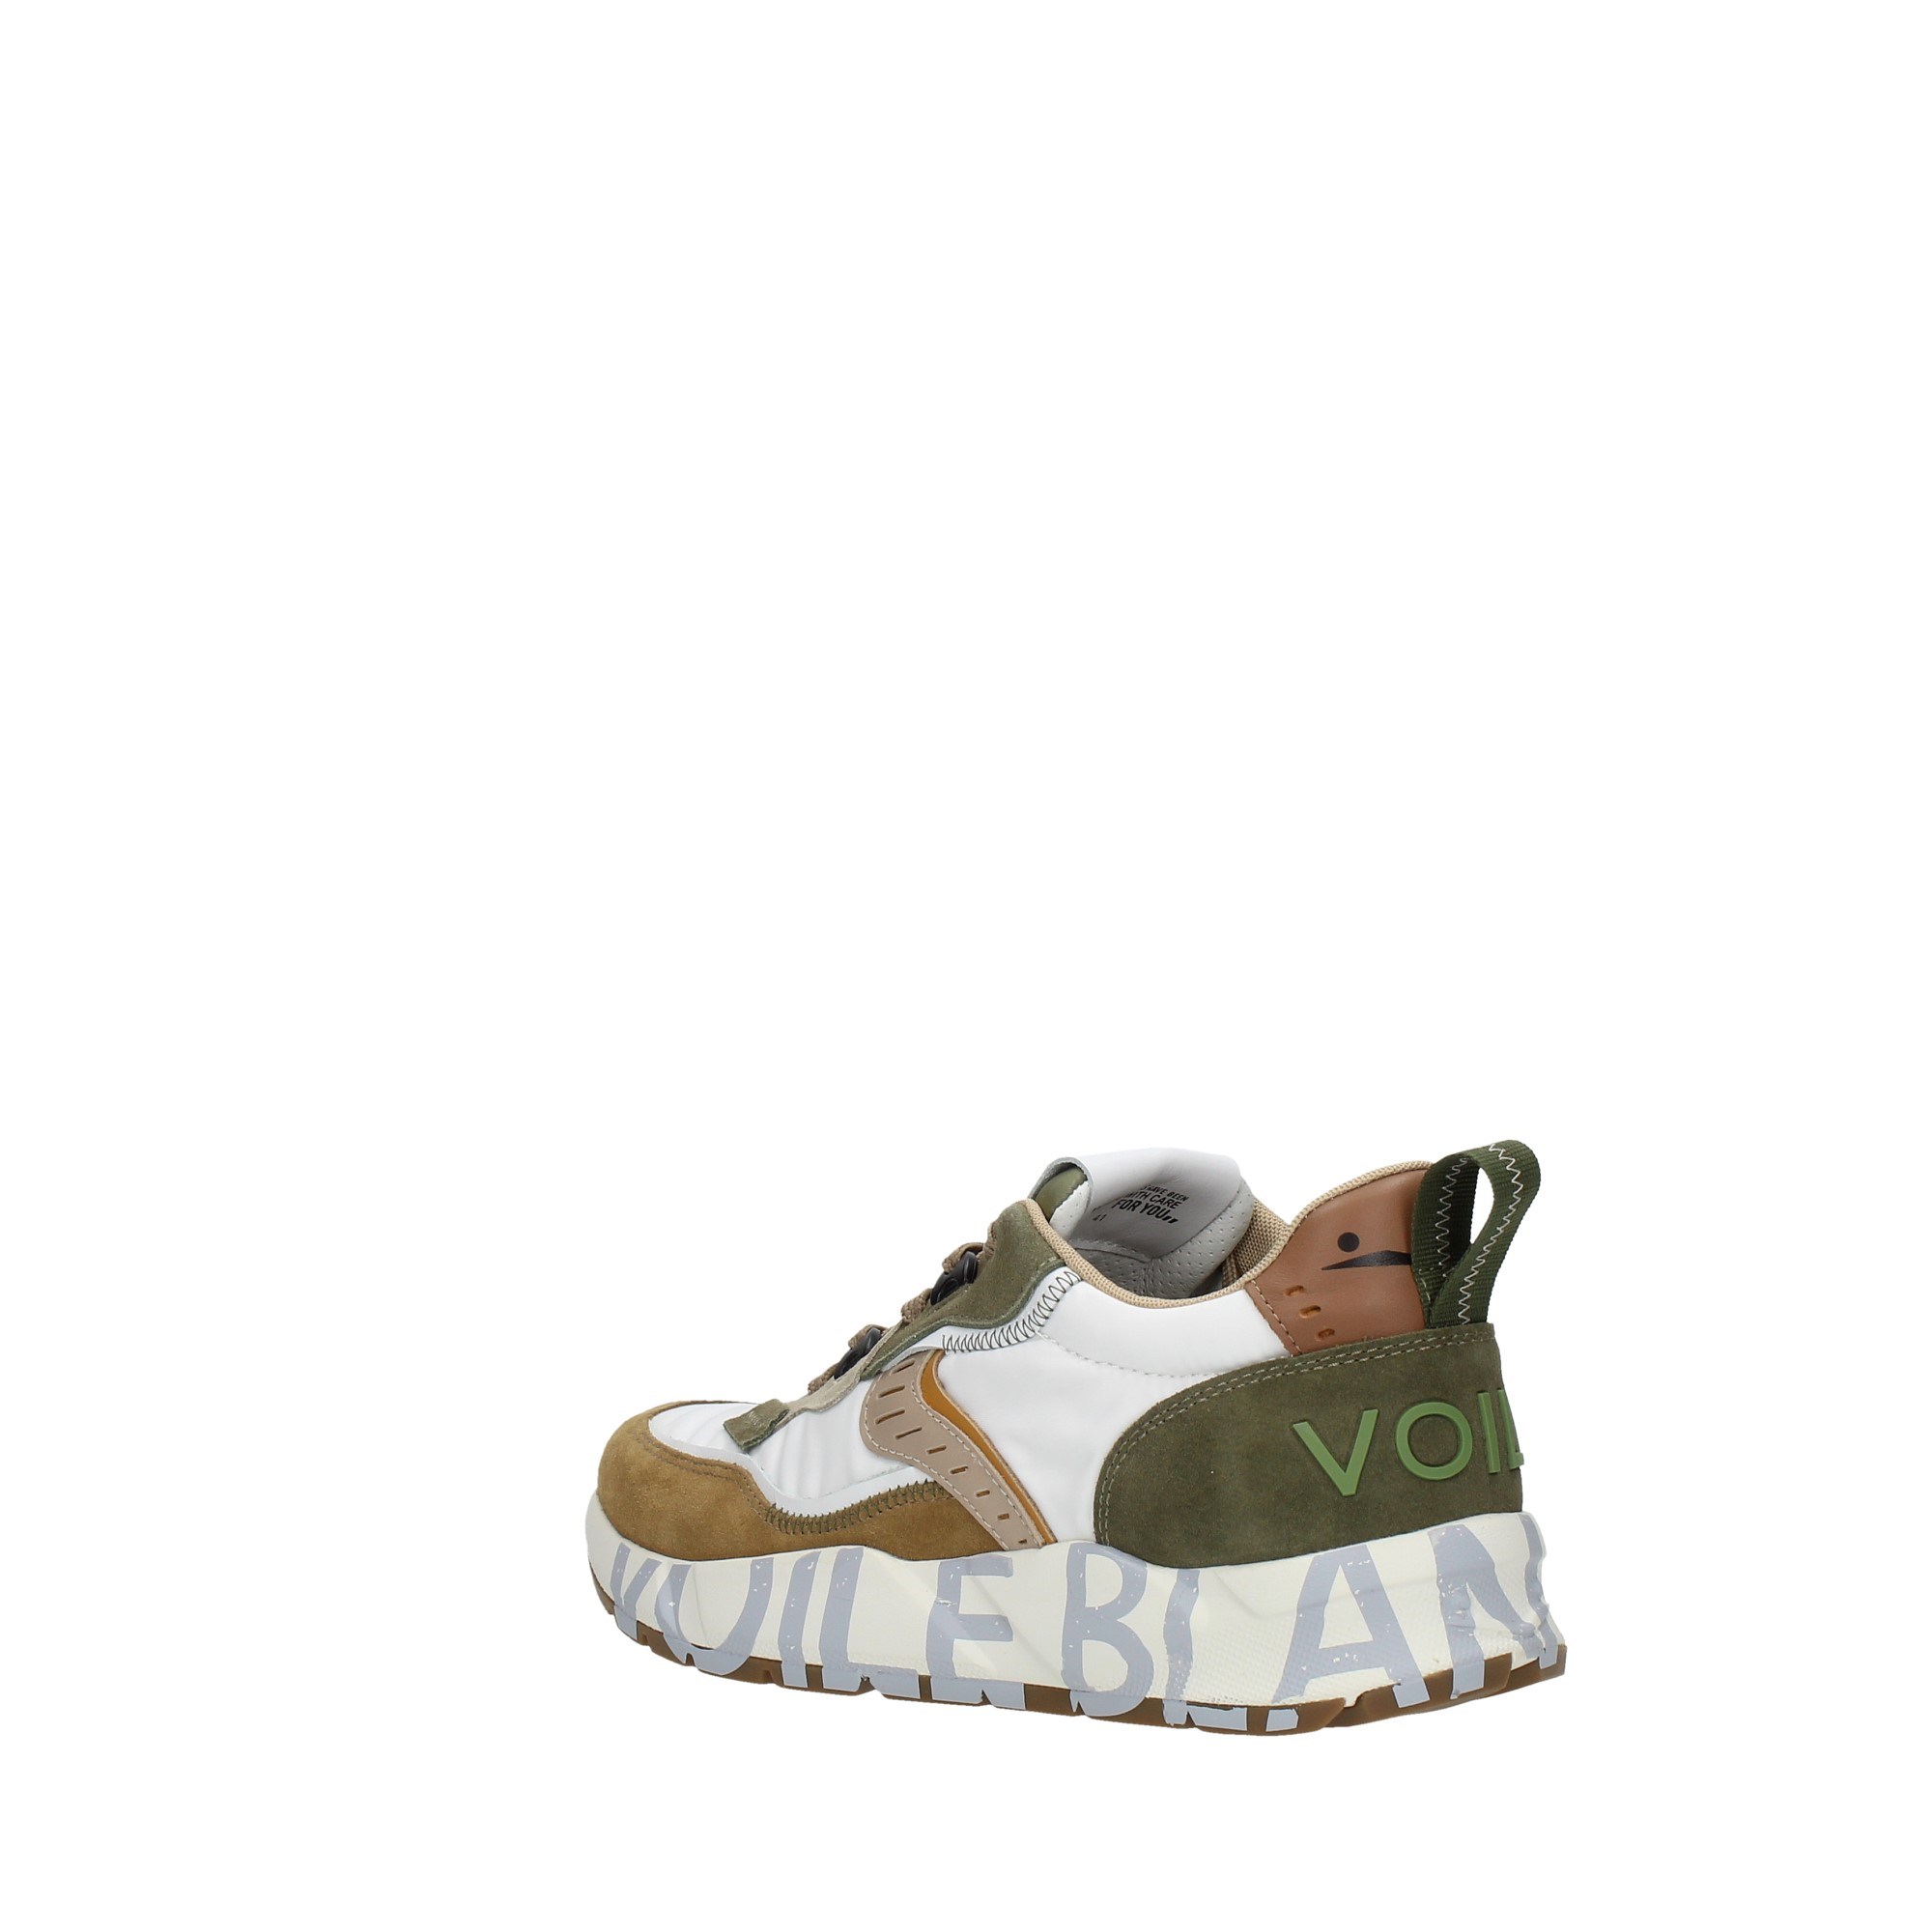 Voile Blanche Scarpe Uomo Sneakers Beige 201-7465-09